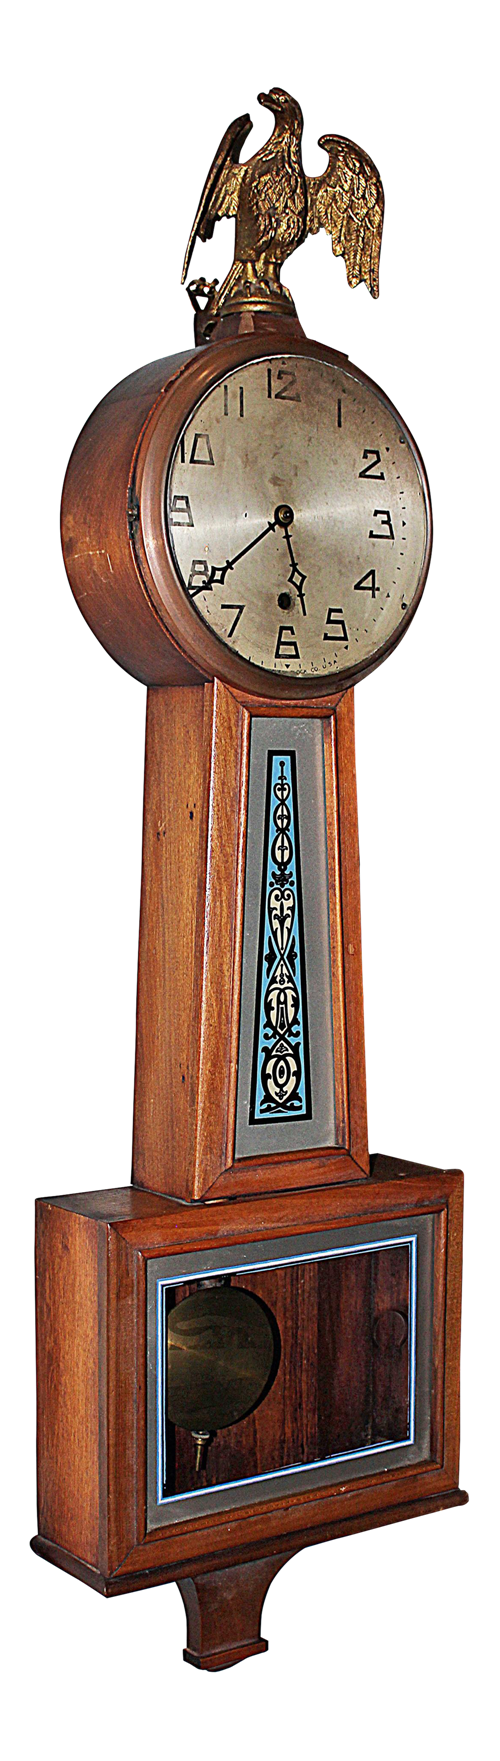 Banjo Clock Transparent Background